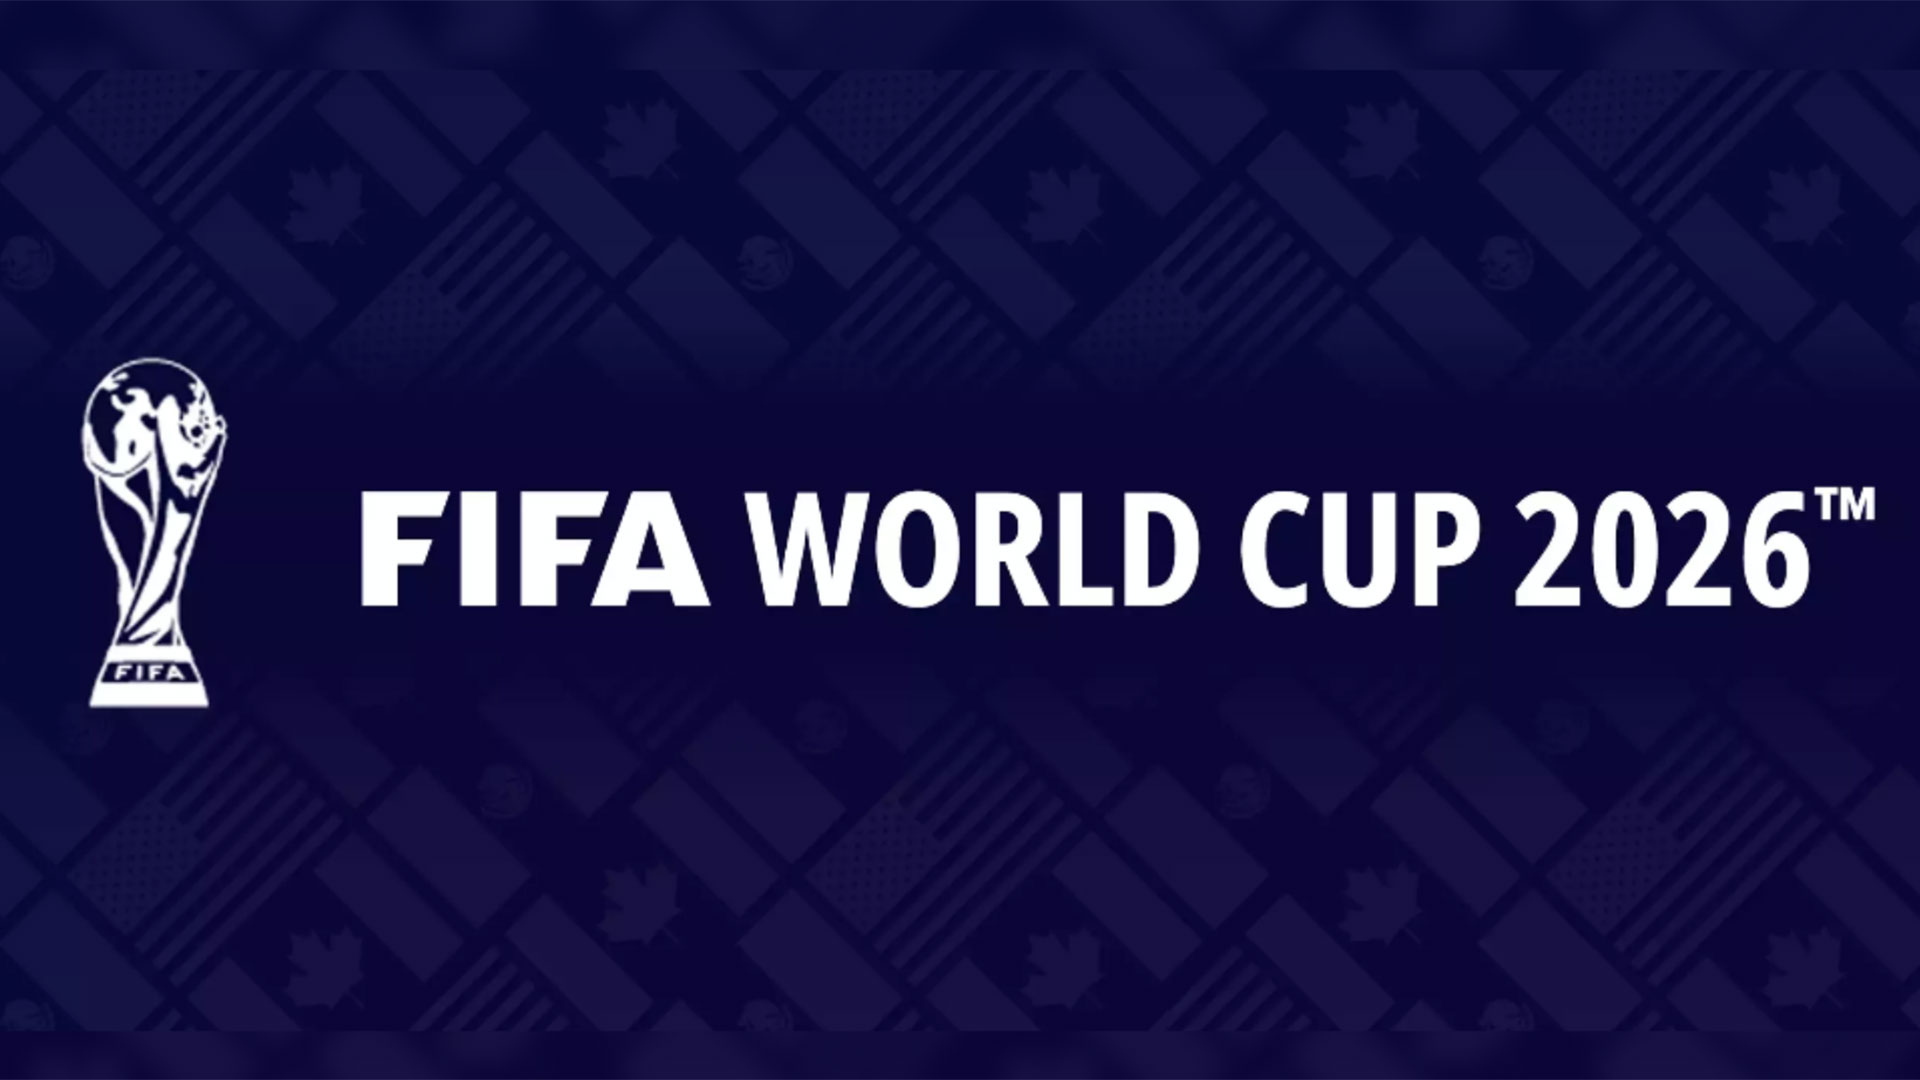 Copa Mundial de la FIFA 2026: así se puede registrar desde Colombia para solicitar entradas para los partidos